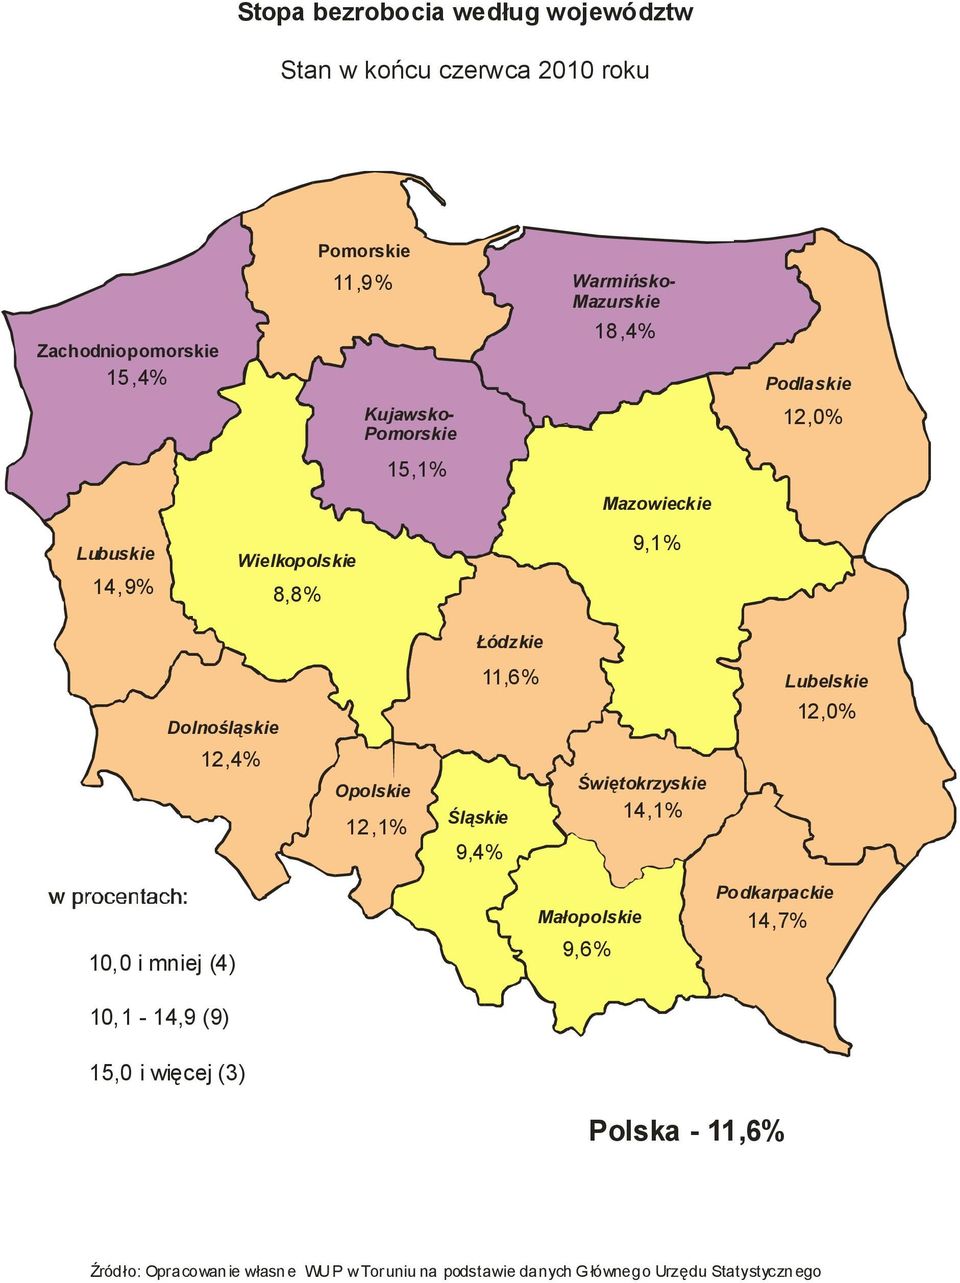 Opolskie 12,1% 11,6% Śląskie 9,4% Świętokrzyskie 14,1% Lubelskie 12,0% 10,0 i mniej (4) 10,1-14,9 (9) 15,0 i więcej (3)